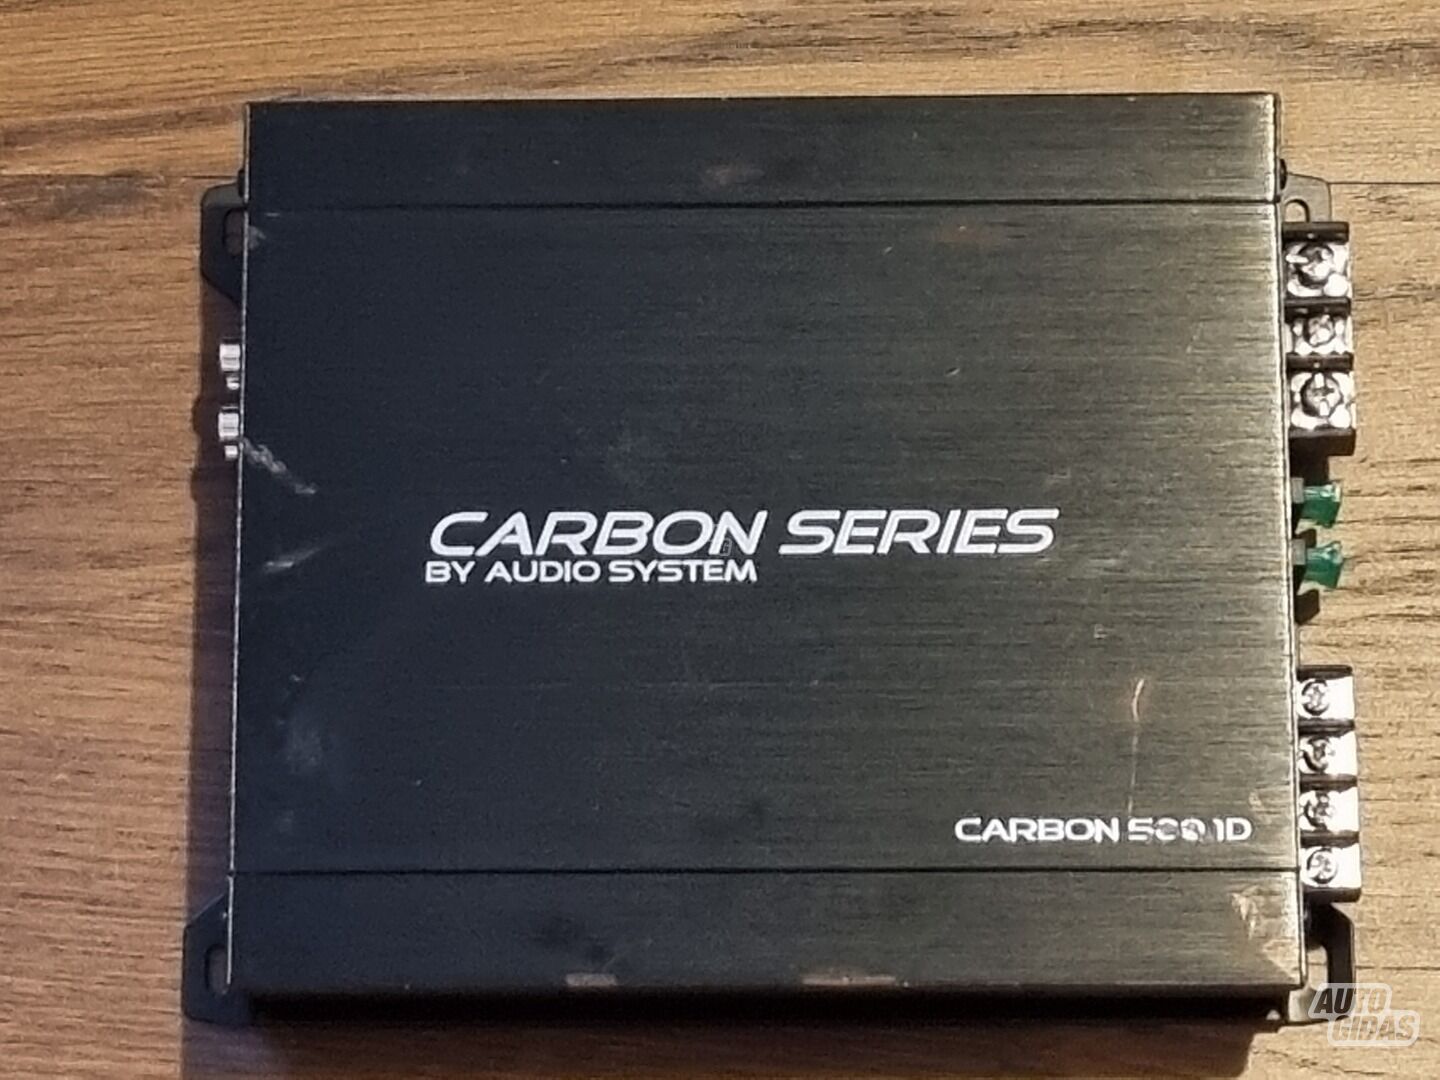 Audio system Carbon 500.1D Audio Amplifier